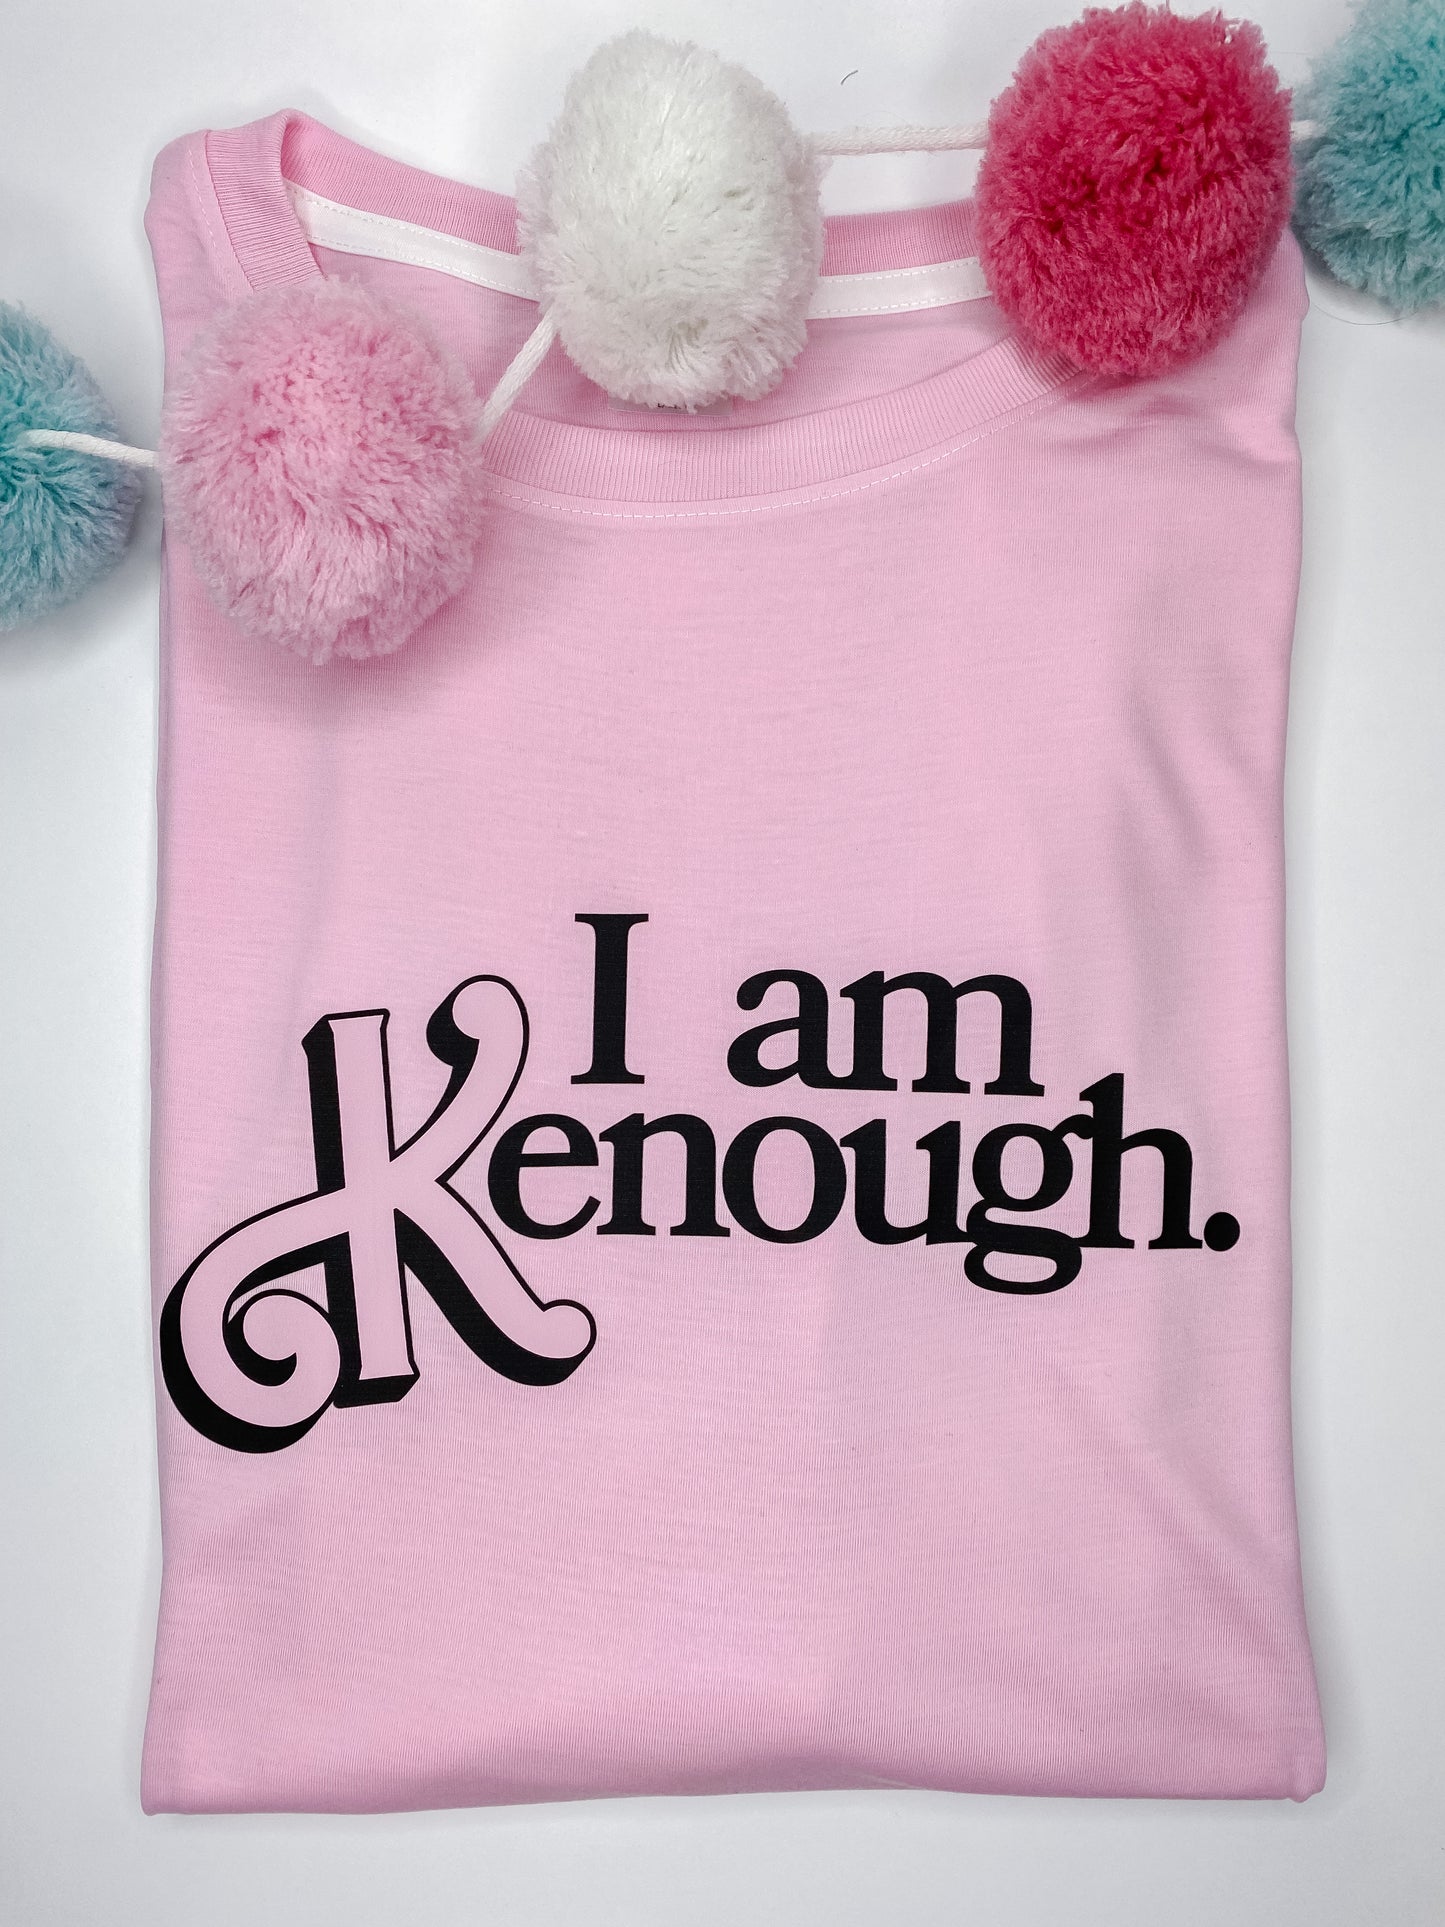 Kenough Tshirt (adult)